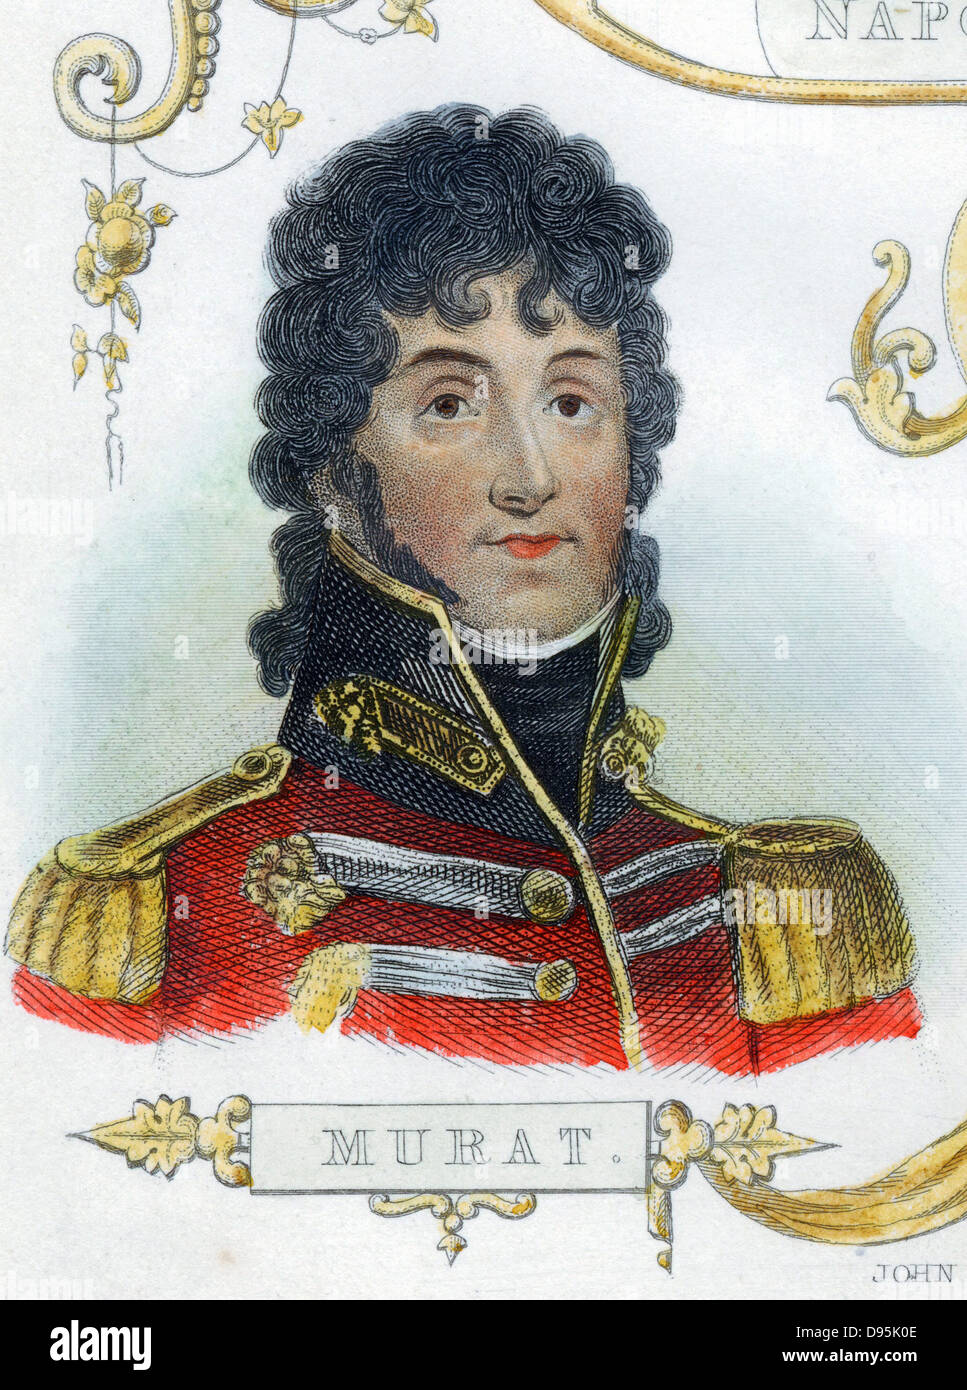 Joachim Murat (1767-1815) soldado francés, rey de Nápoles desde 1808. Grabado pintado a mano Foto de stock